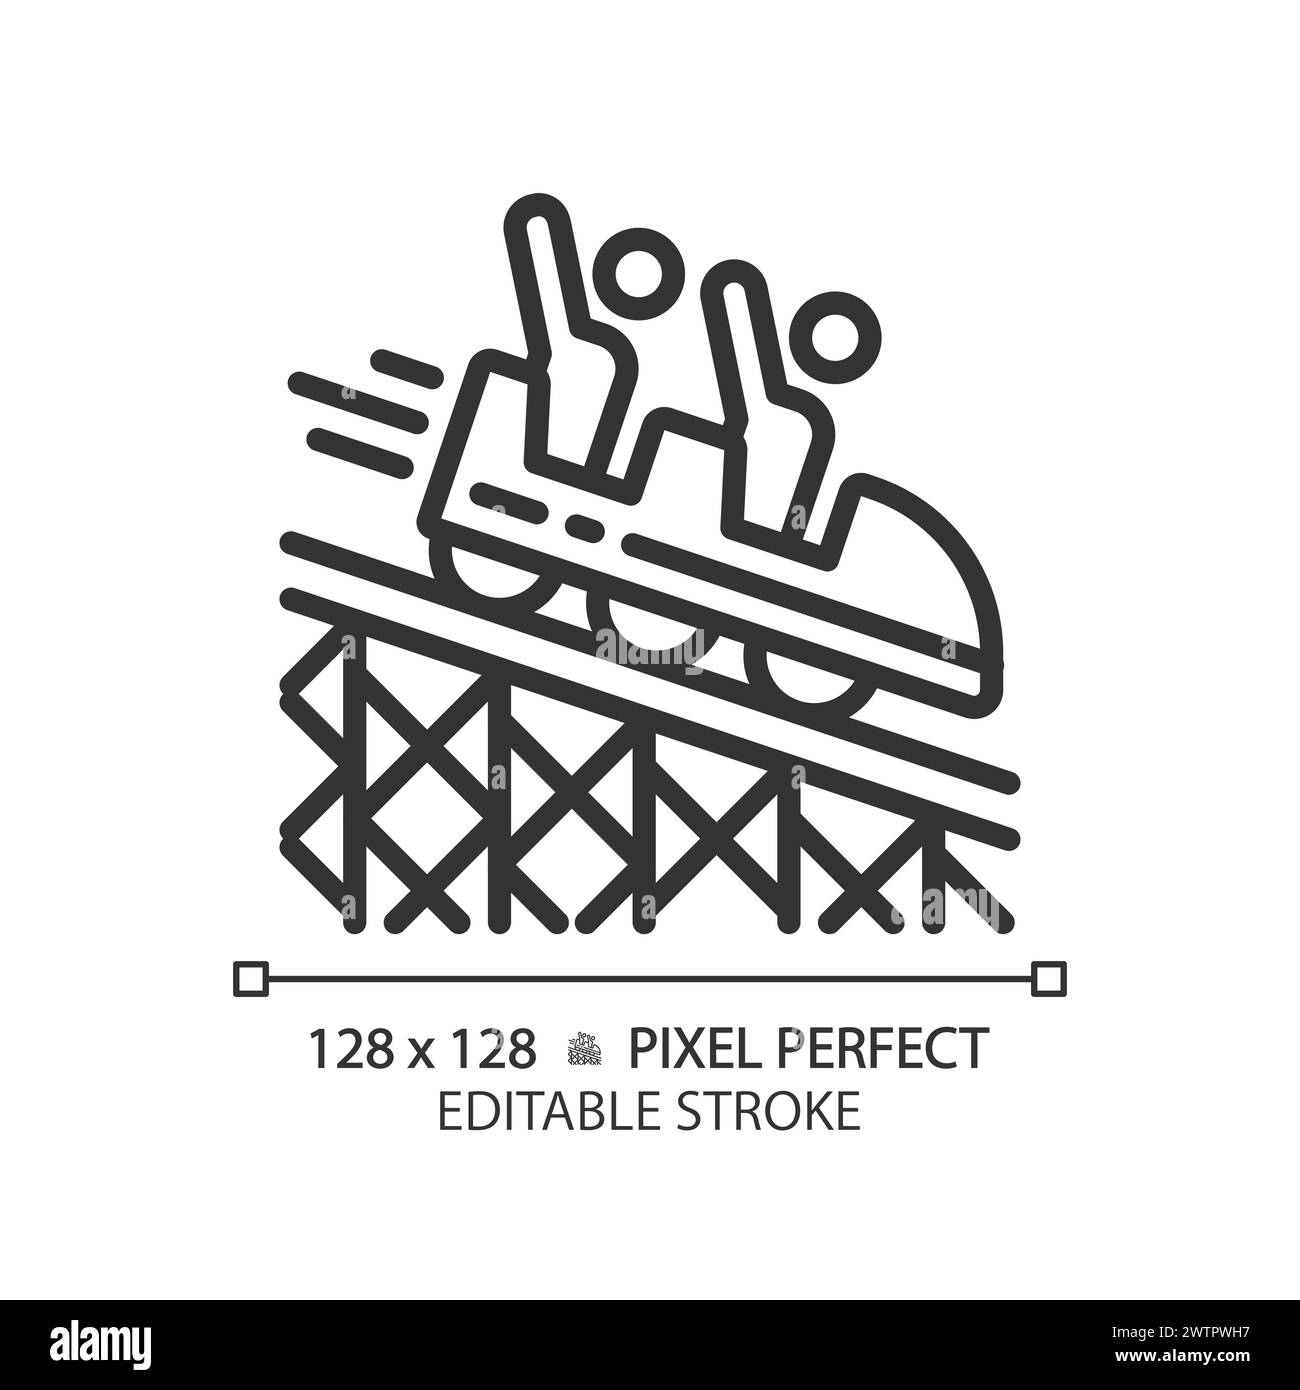 Icône linéaire parfaite pixel de montagnes russes Illustration de Vecteur